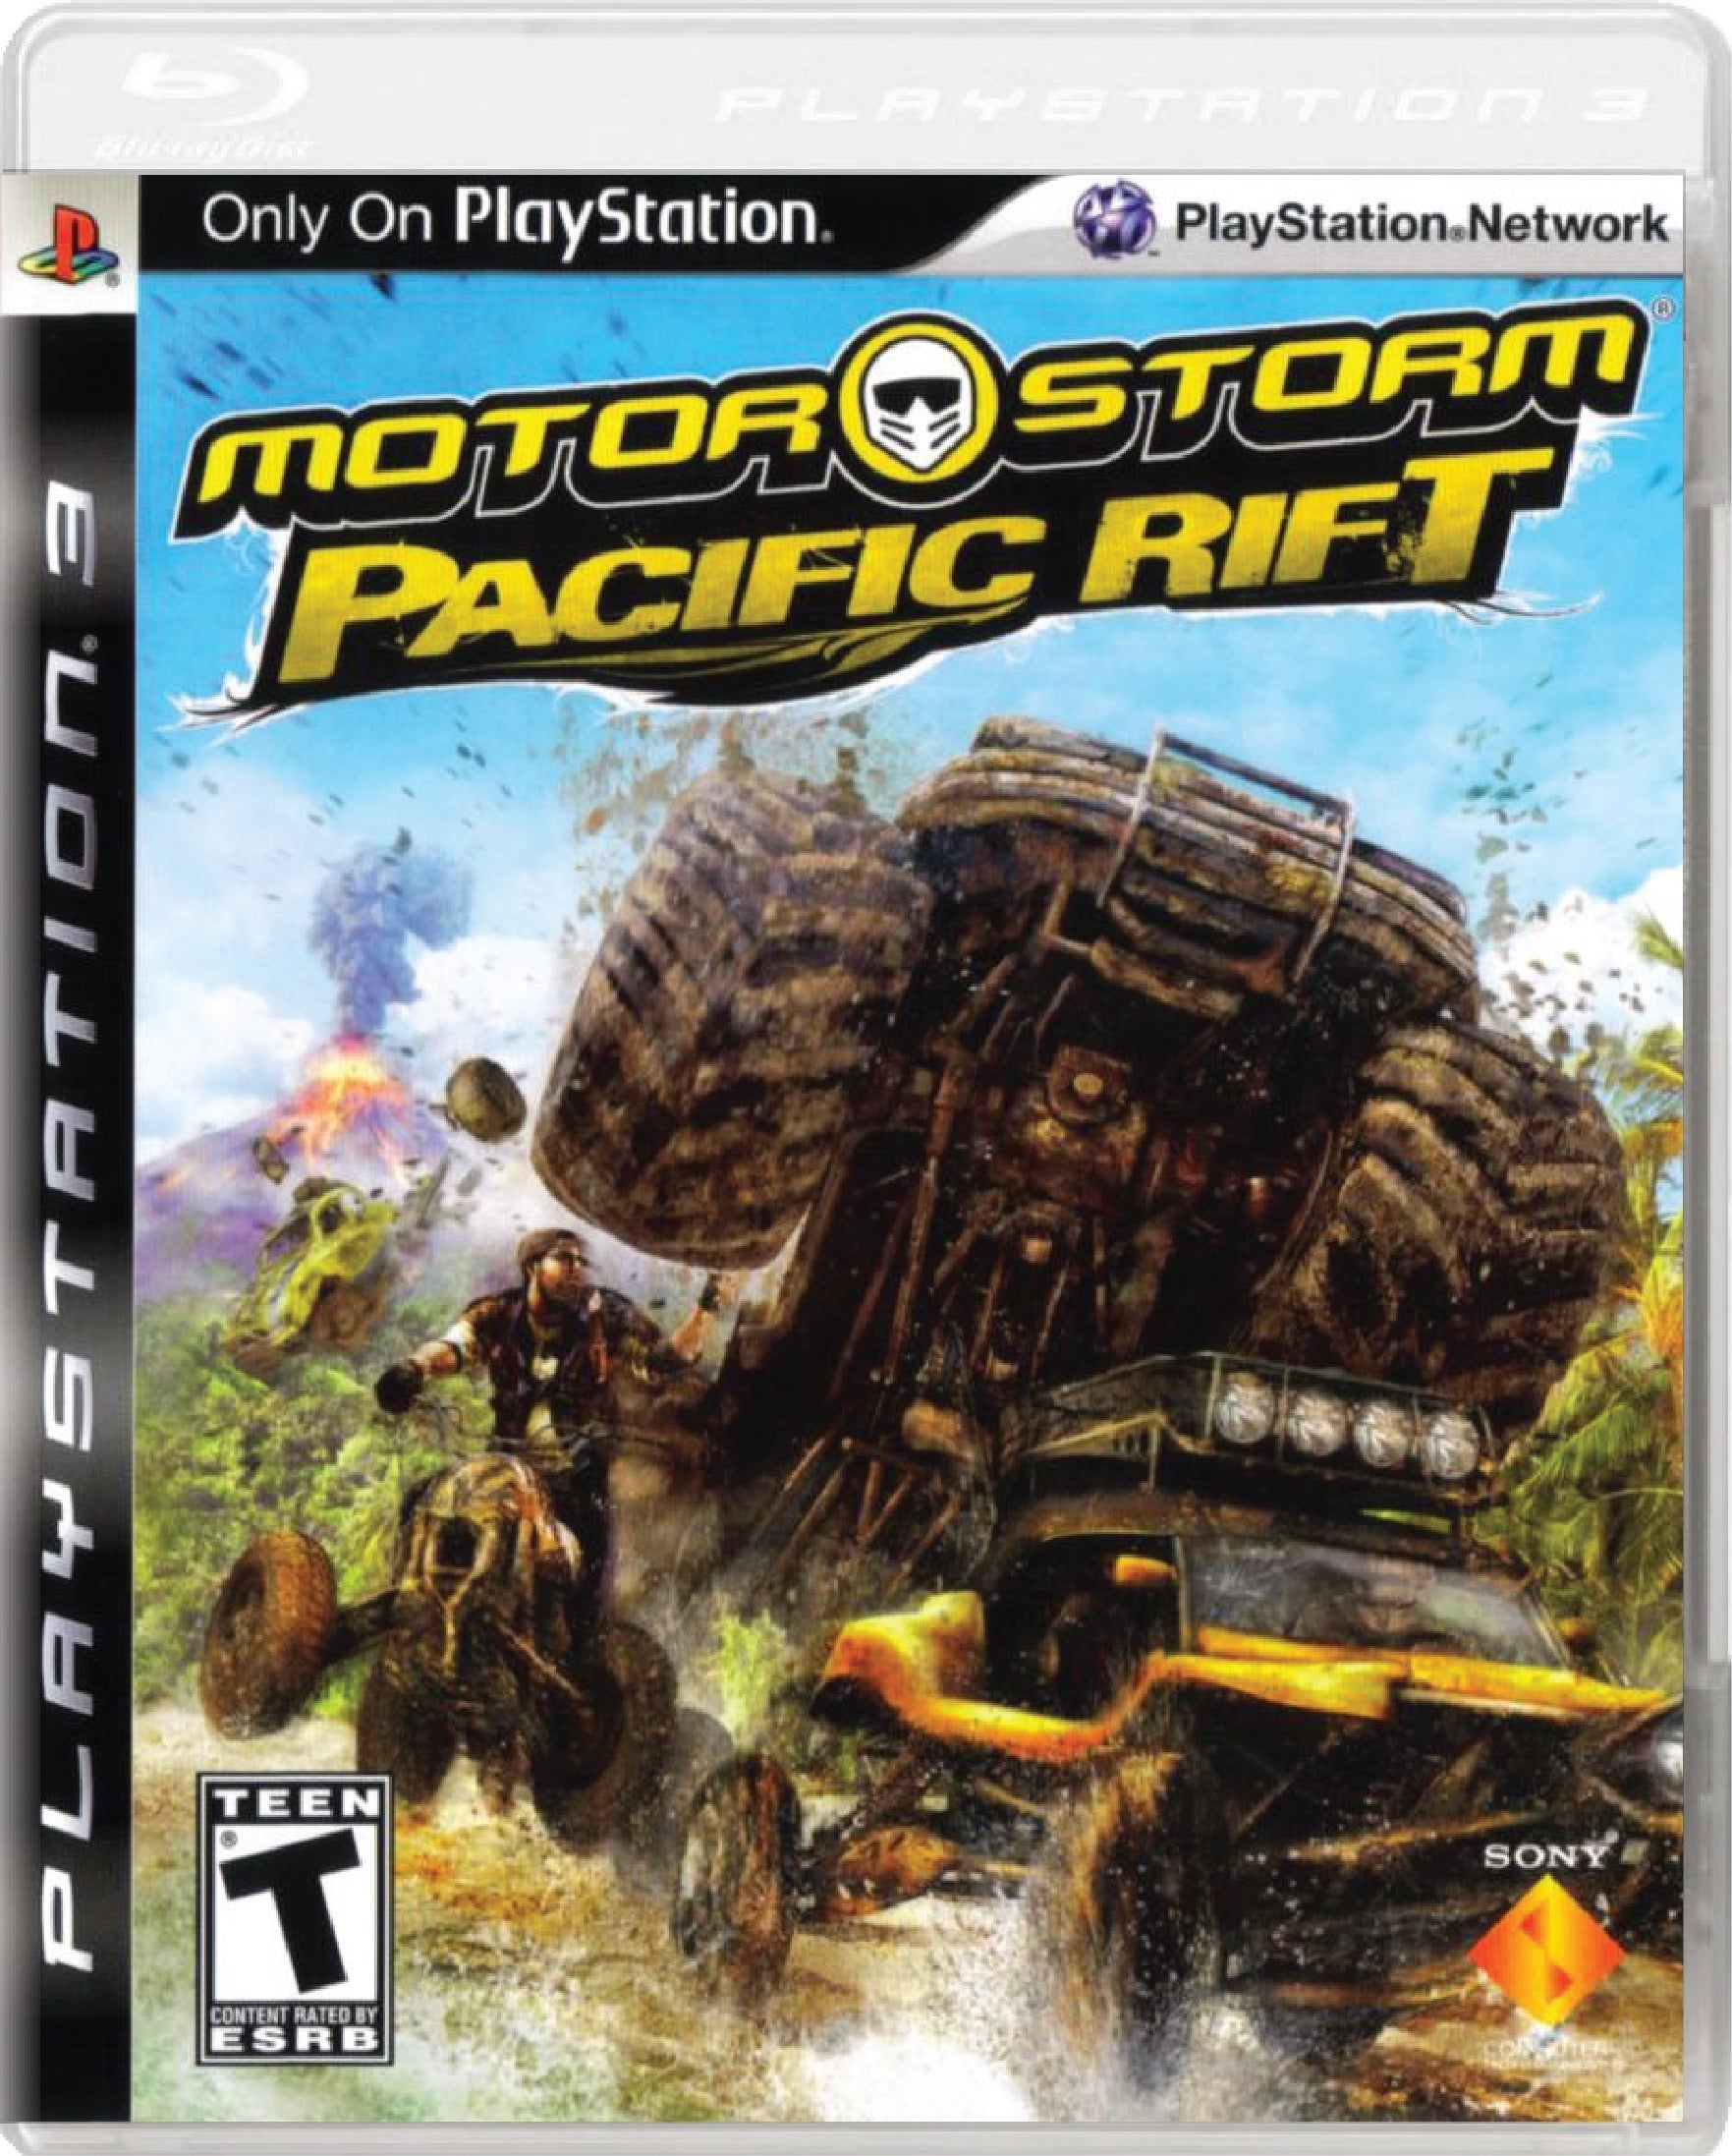 MotorStorm Pacific Rift Cover Art